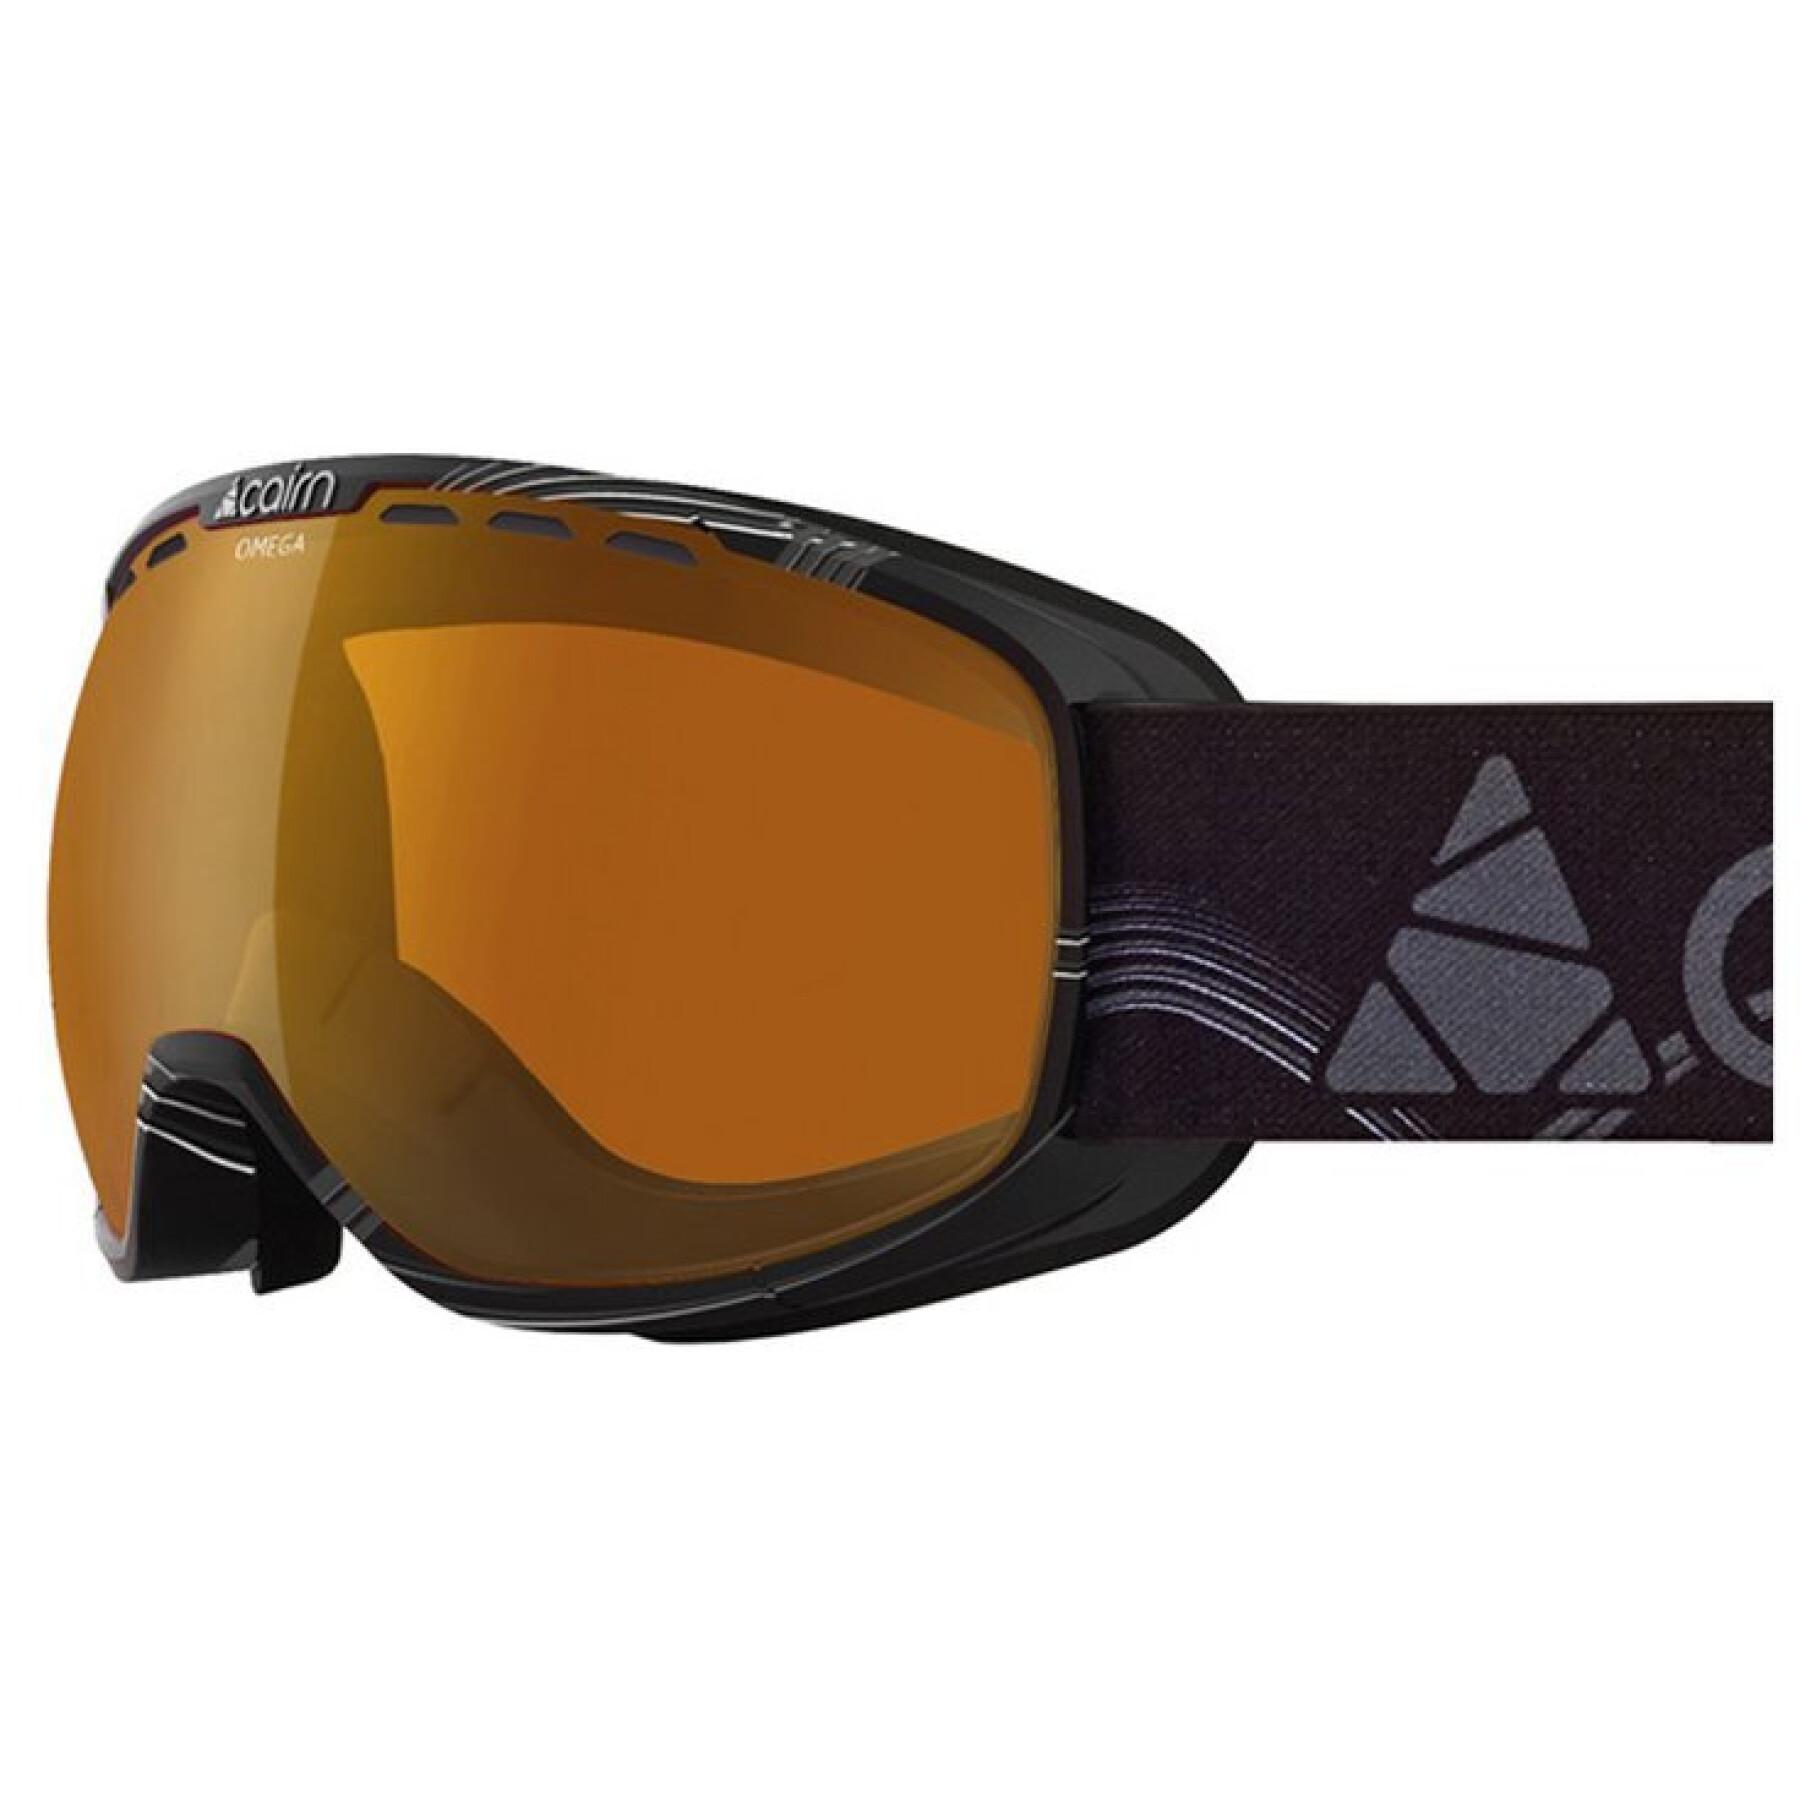 Women's photochromic ski mask Cairn Omega SPX